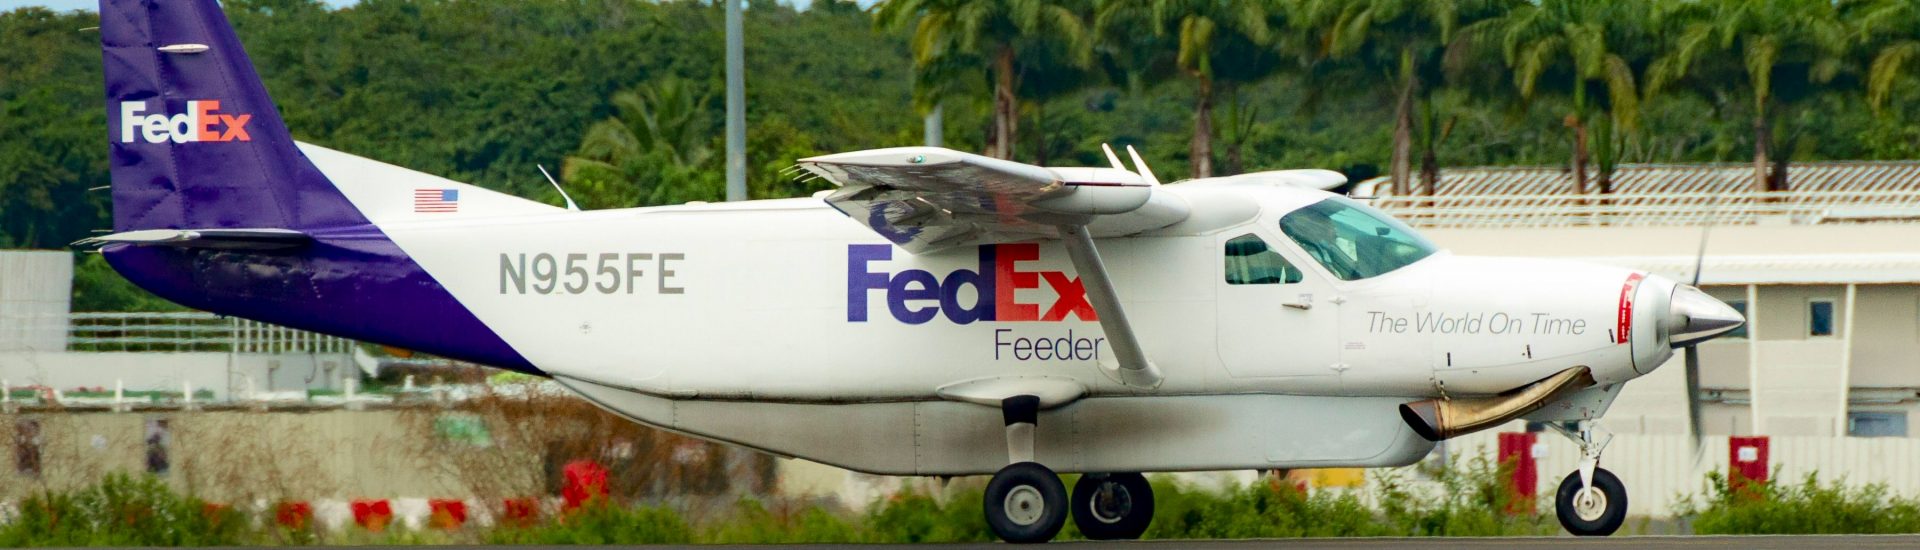 Cessna 208B Fedex Feeder N955FE